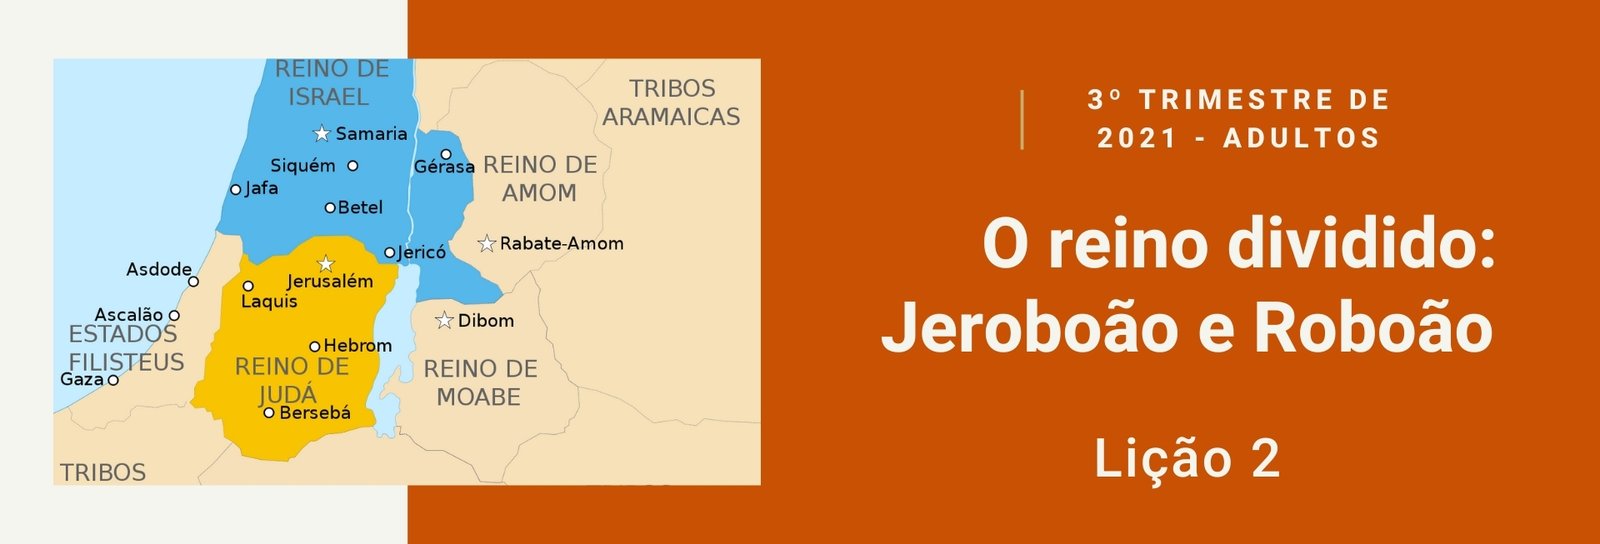 Lição 2 - O reino dividido: Jeroboão e Roboão III